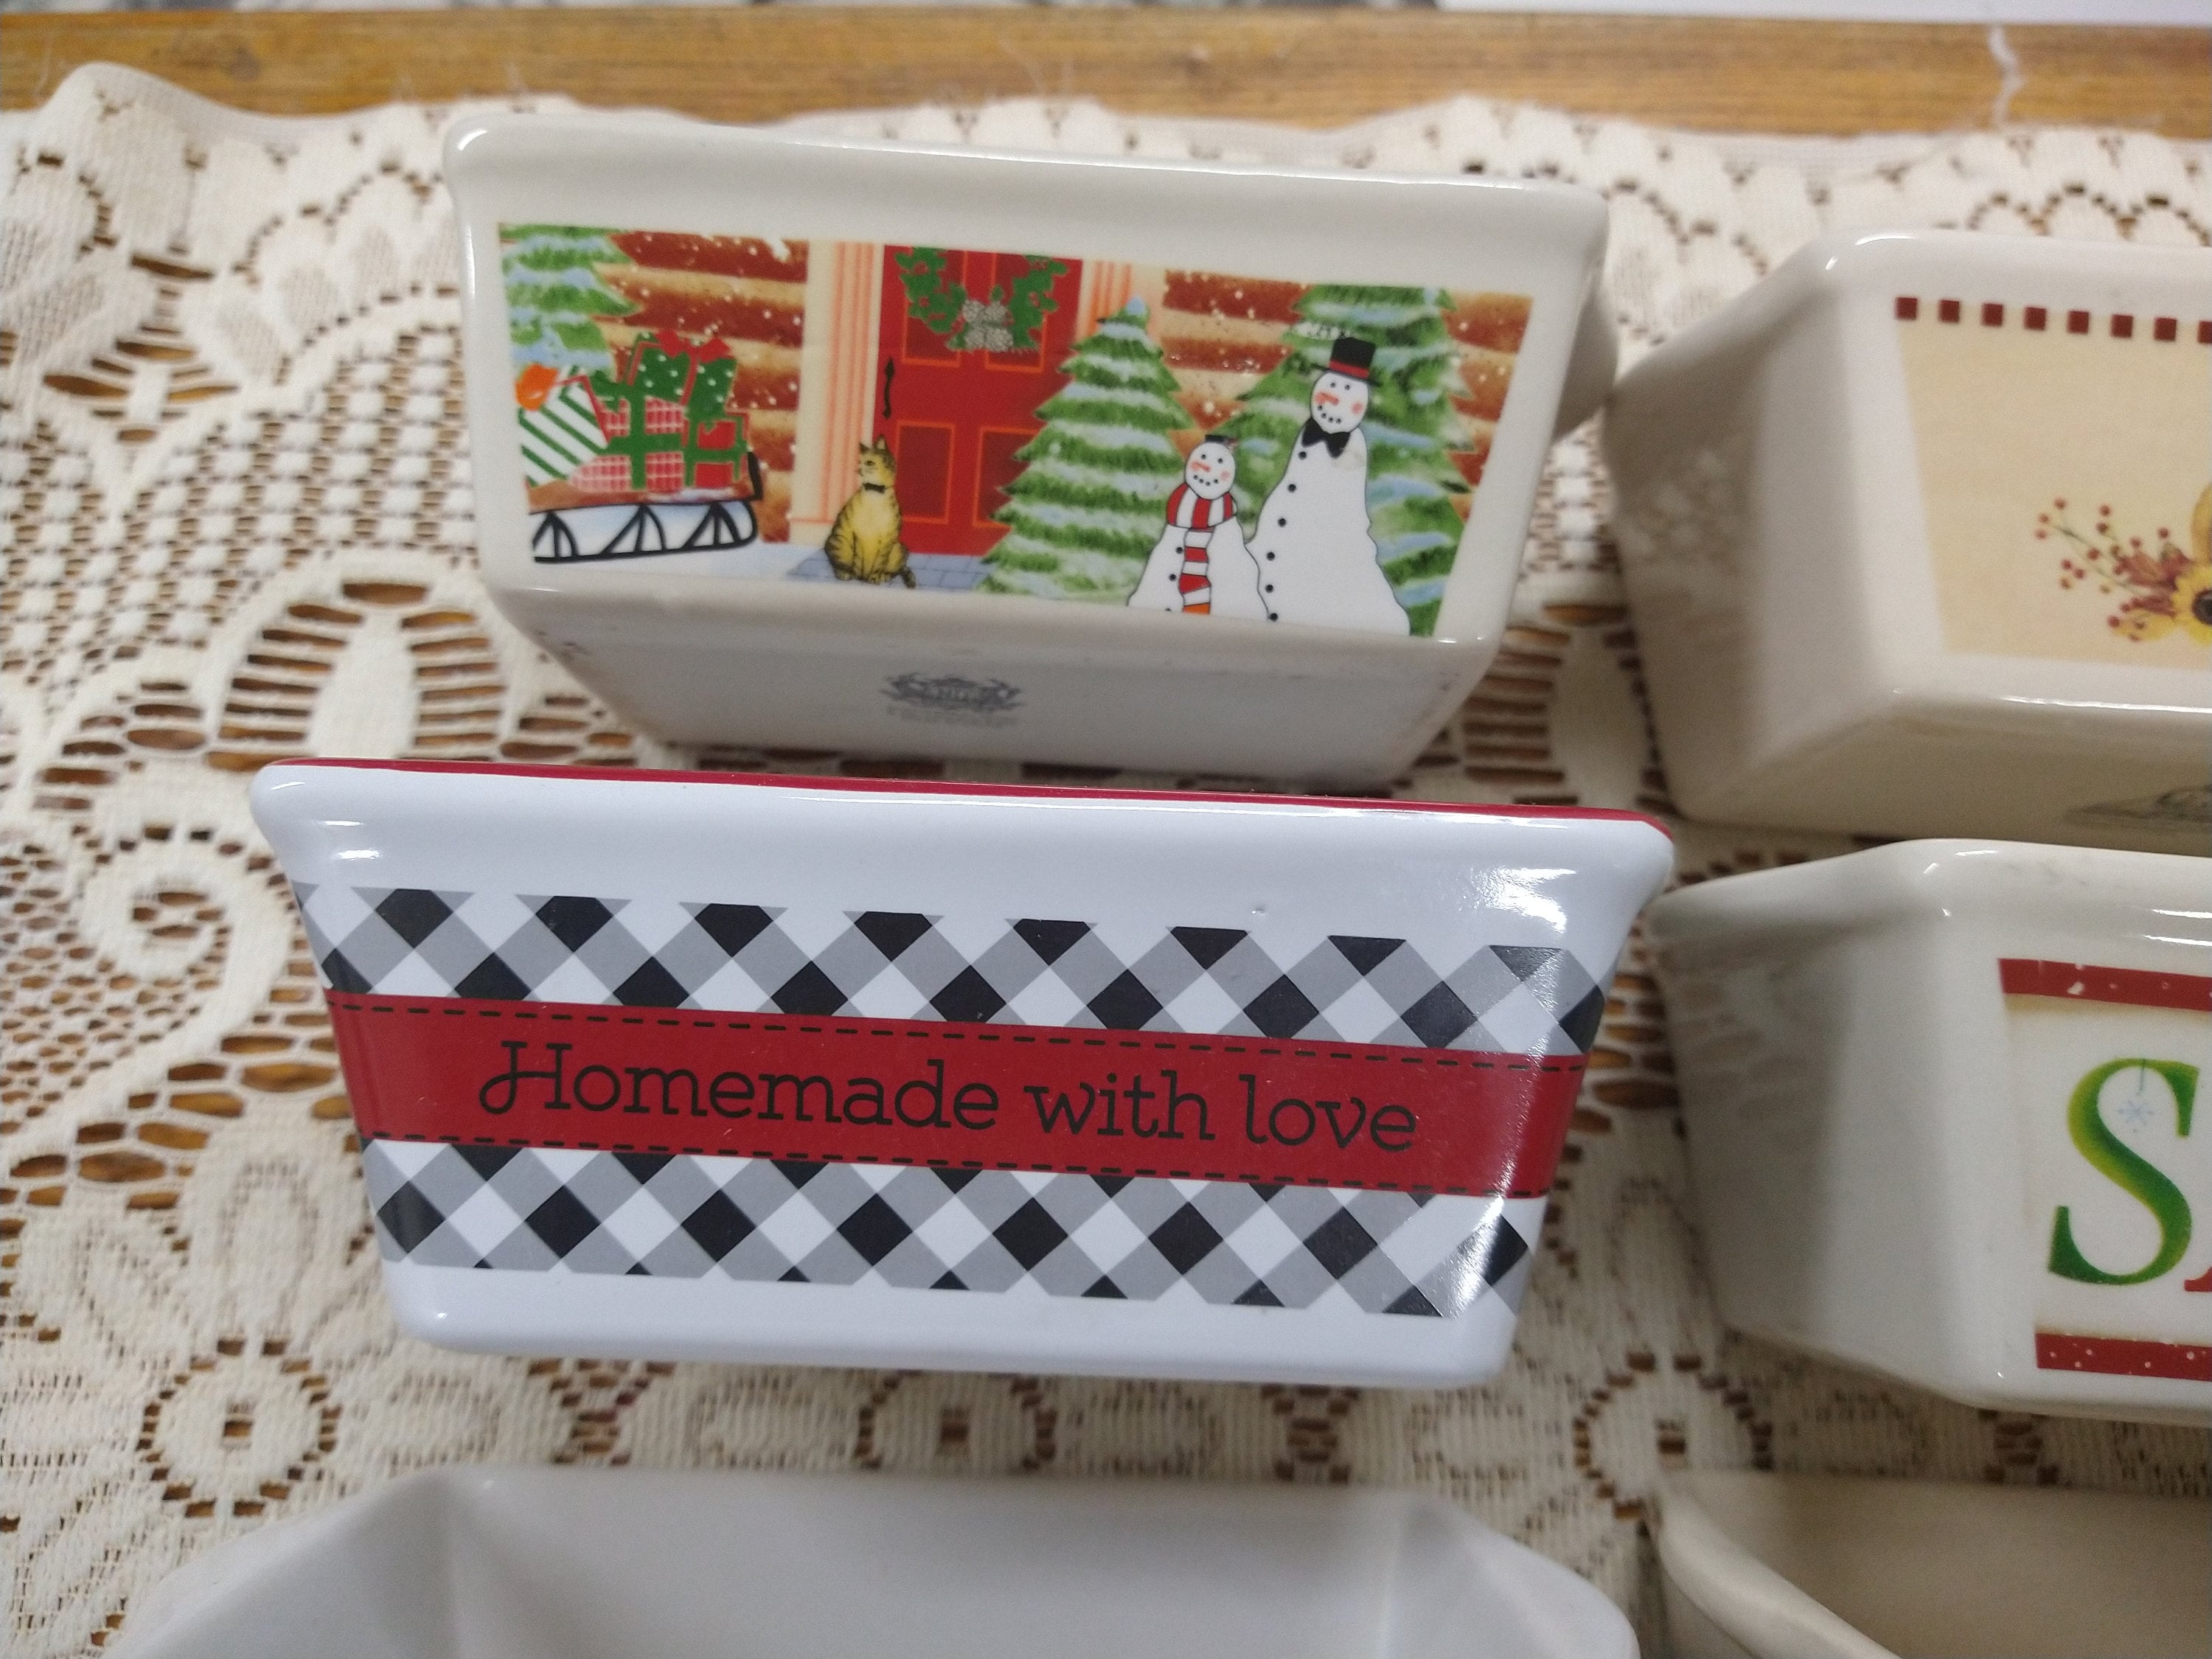 Vintage Garden Ridge Ceramic Mini Loaf Baking Pan in Christmas Theme. Set  of 3 Mini Loaf Pans 